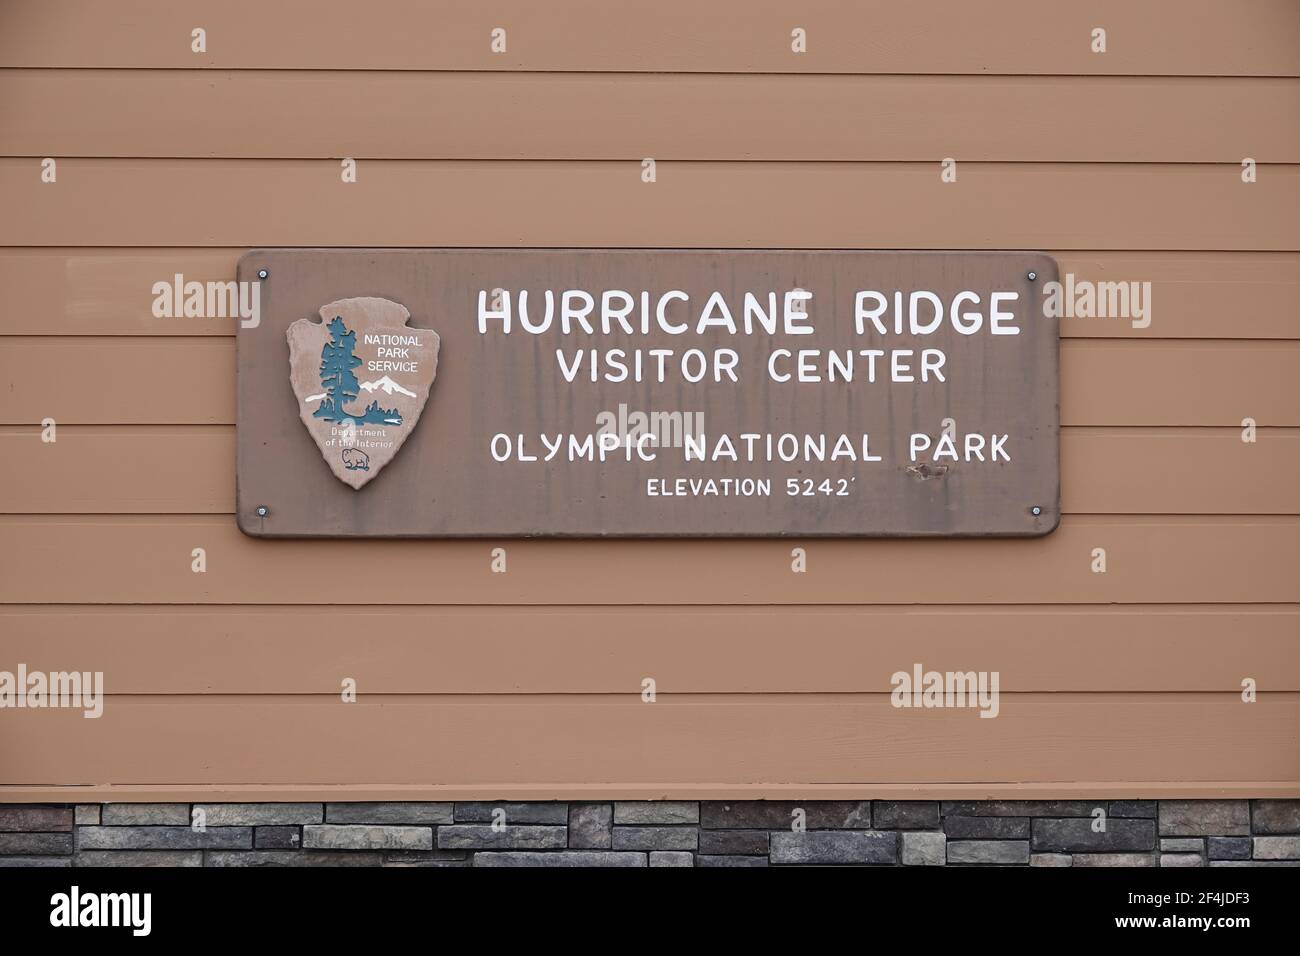 Cartello del Centro visitatori Hurricane Ridge (Parco Nazionale Olimpico) Foto Stock